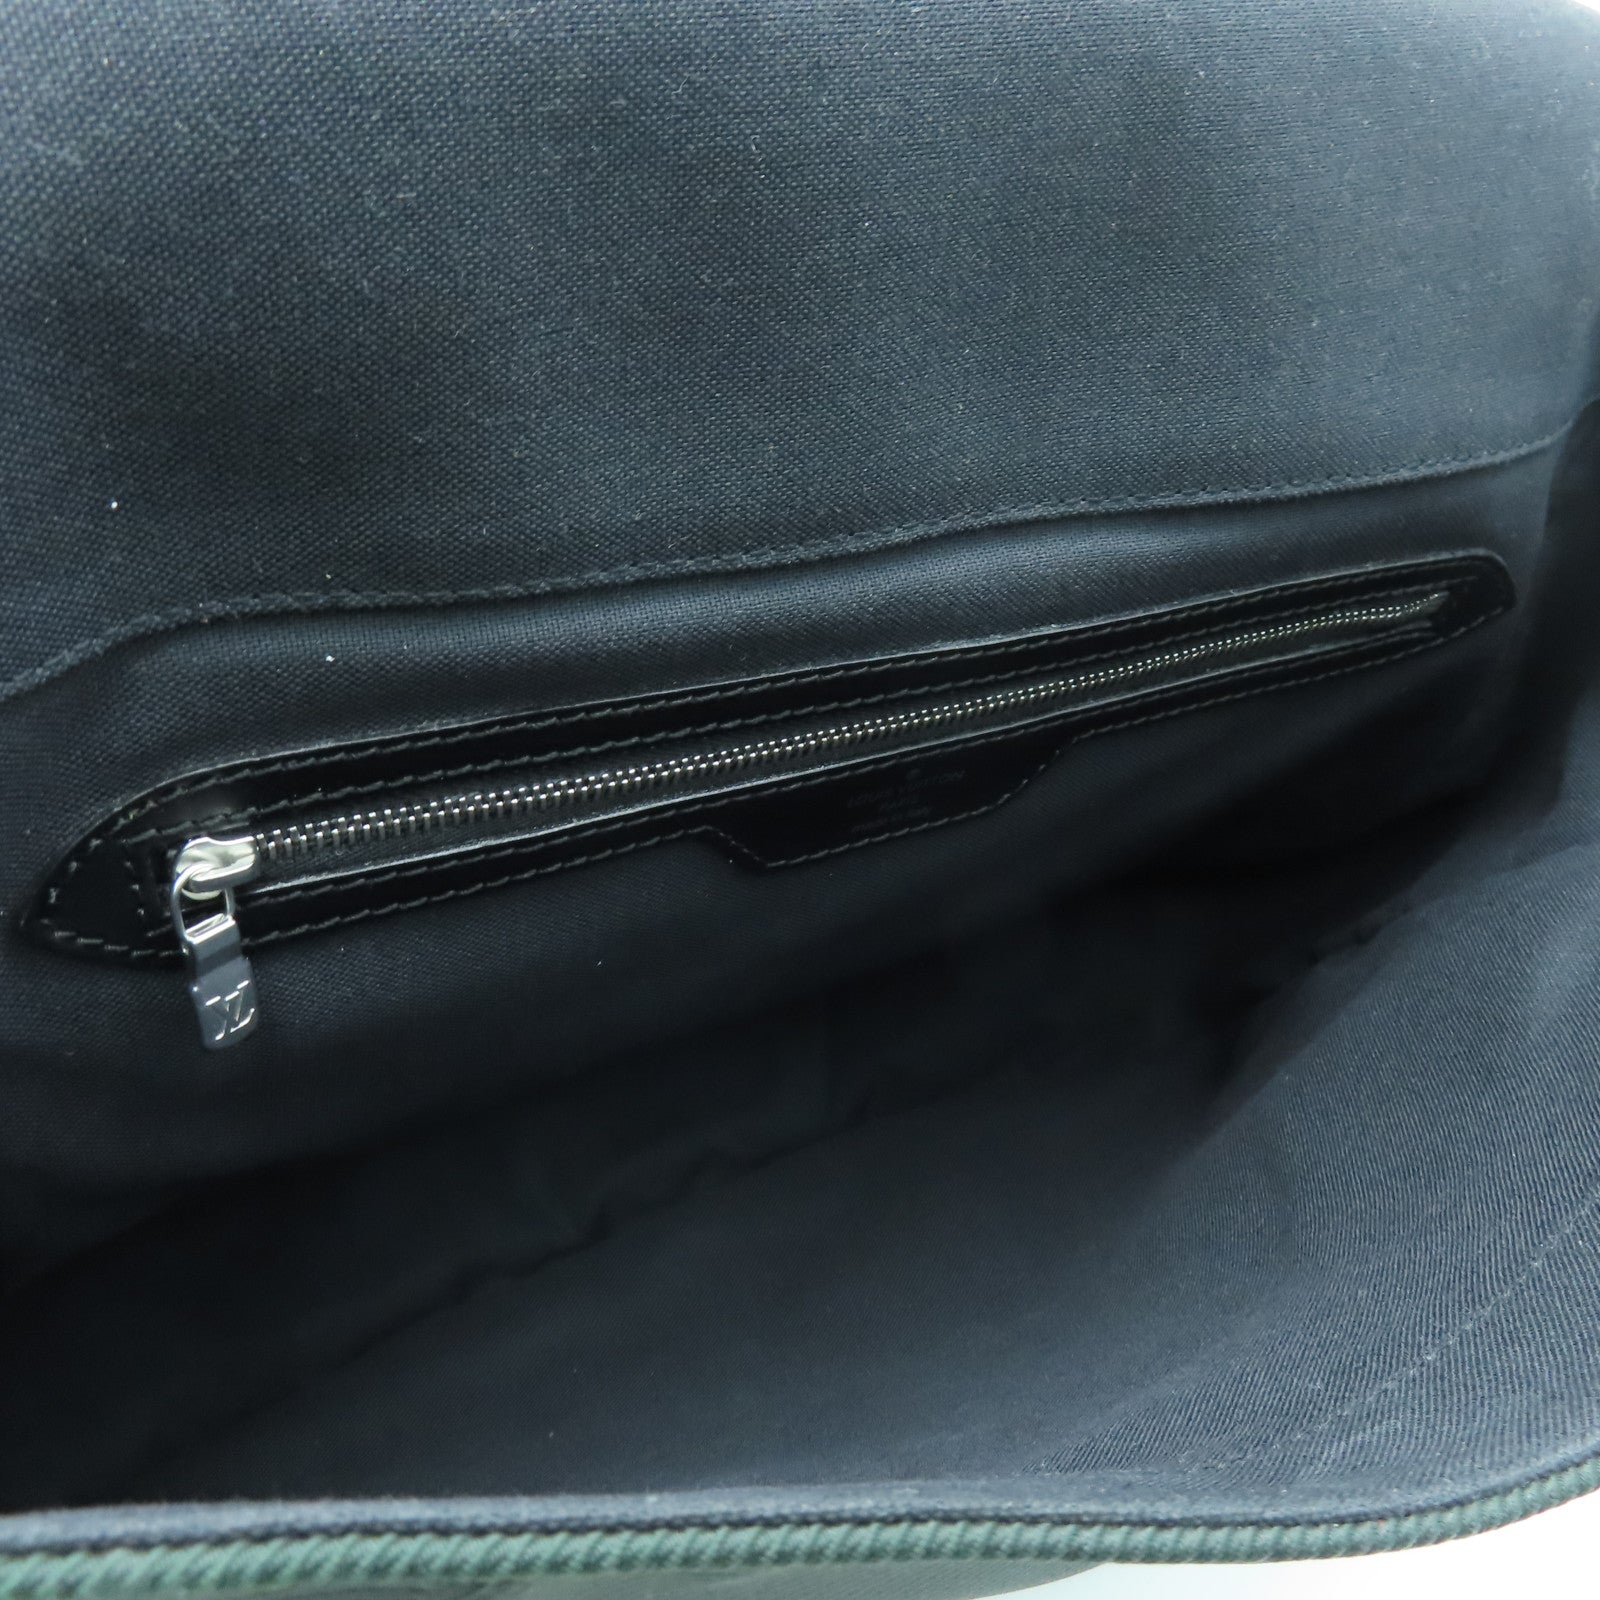 LOUIS VUITTON Taiga Outdoor Messenger Silver Buckle Shoulder Bag Silve –  Brand Off Hong Kong Online Store